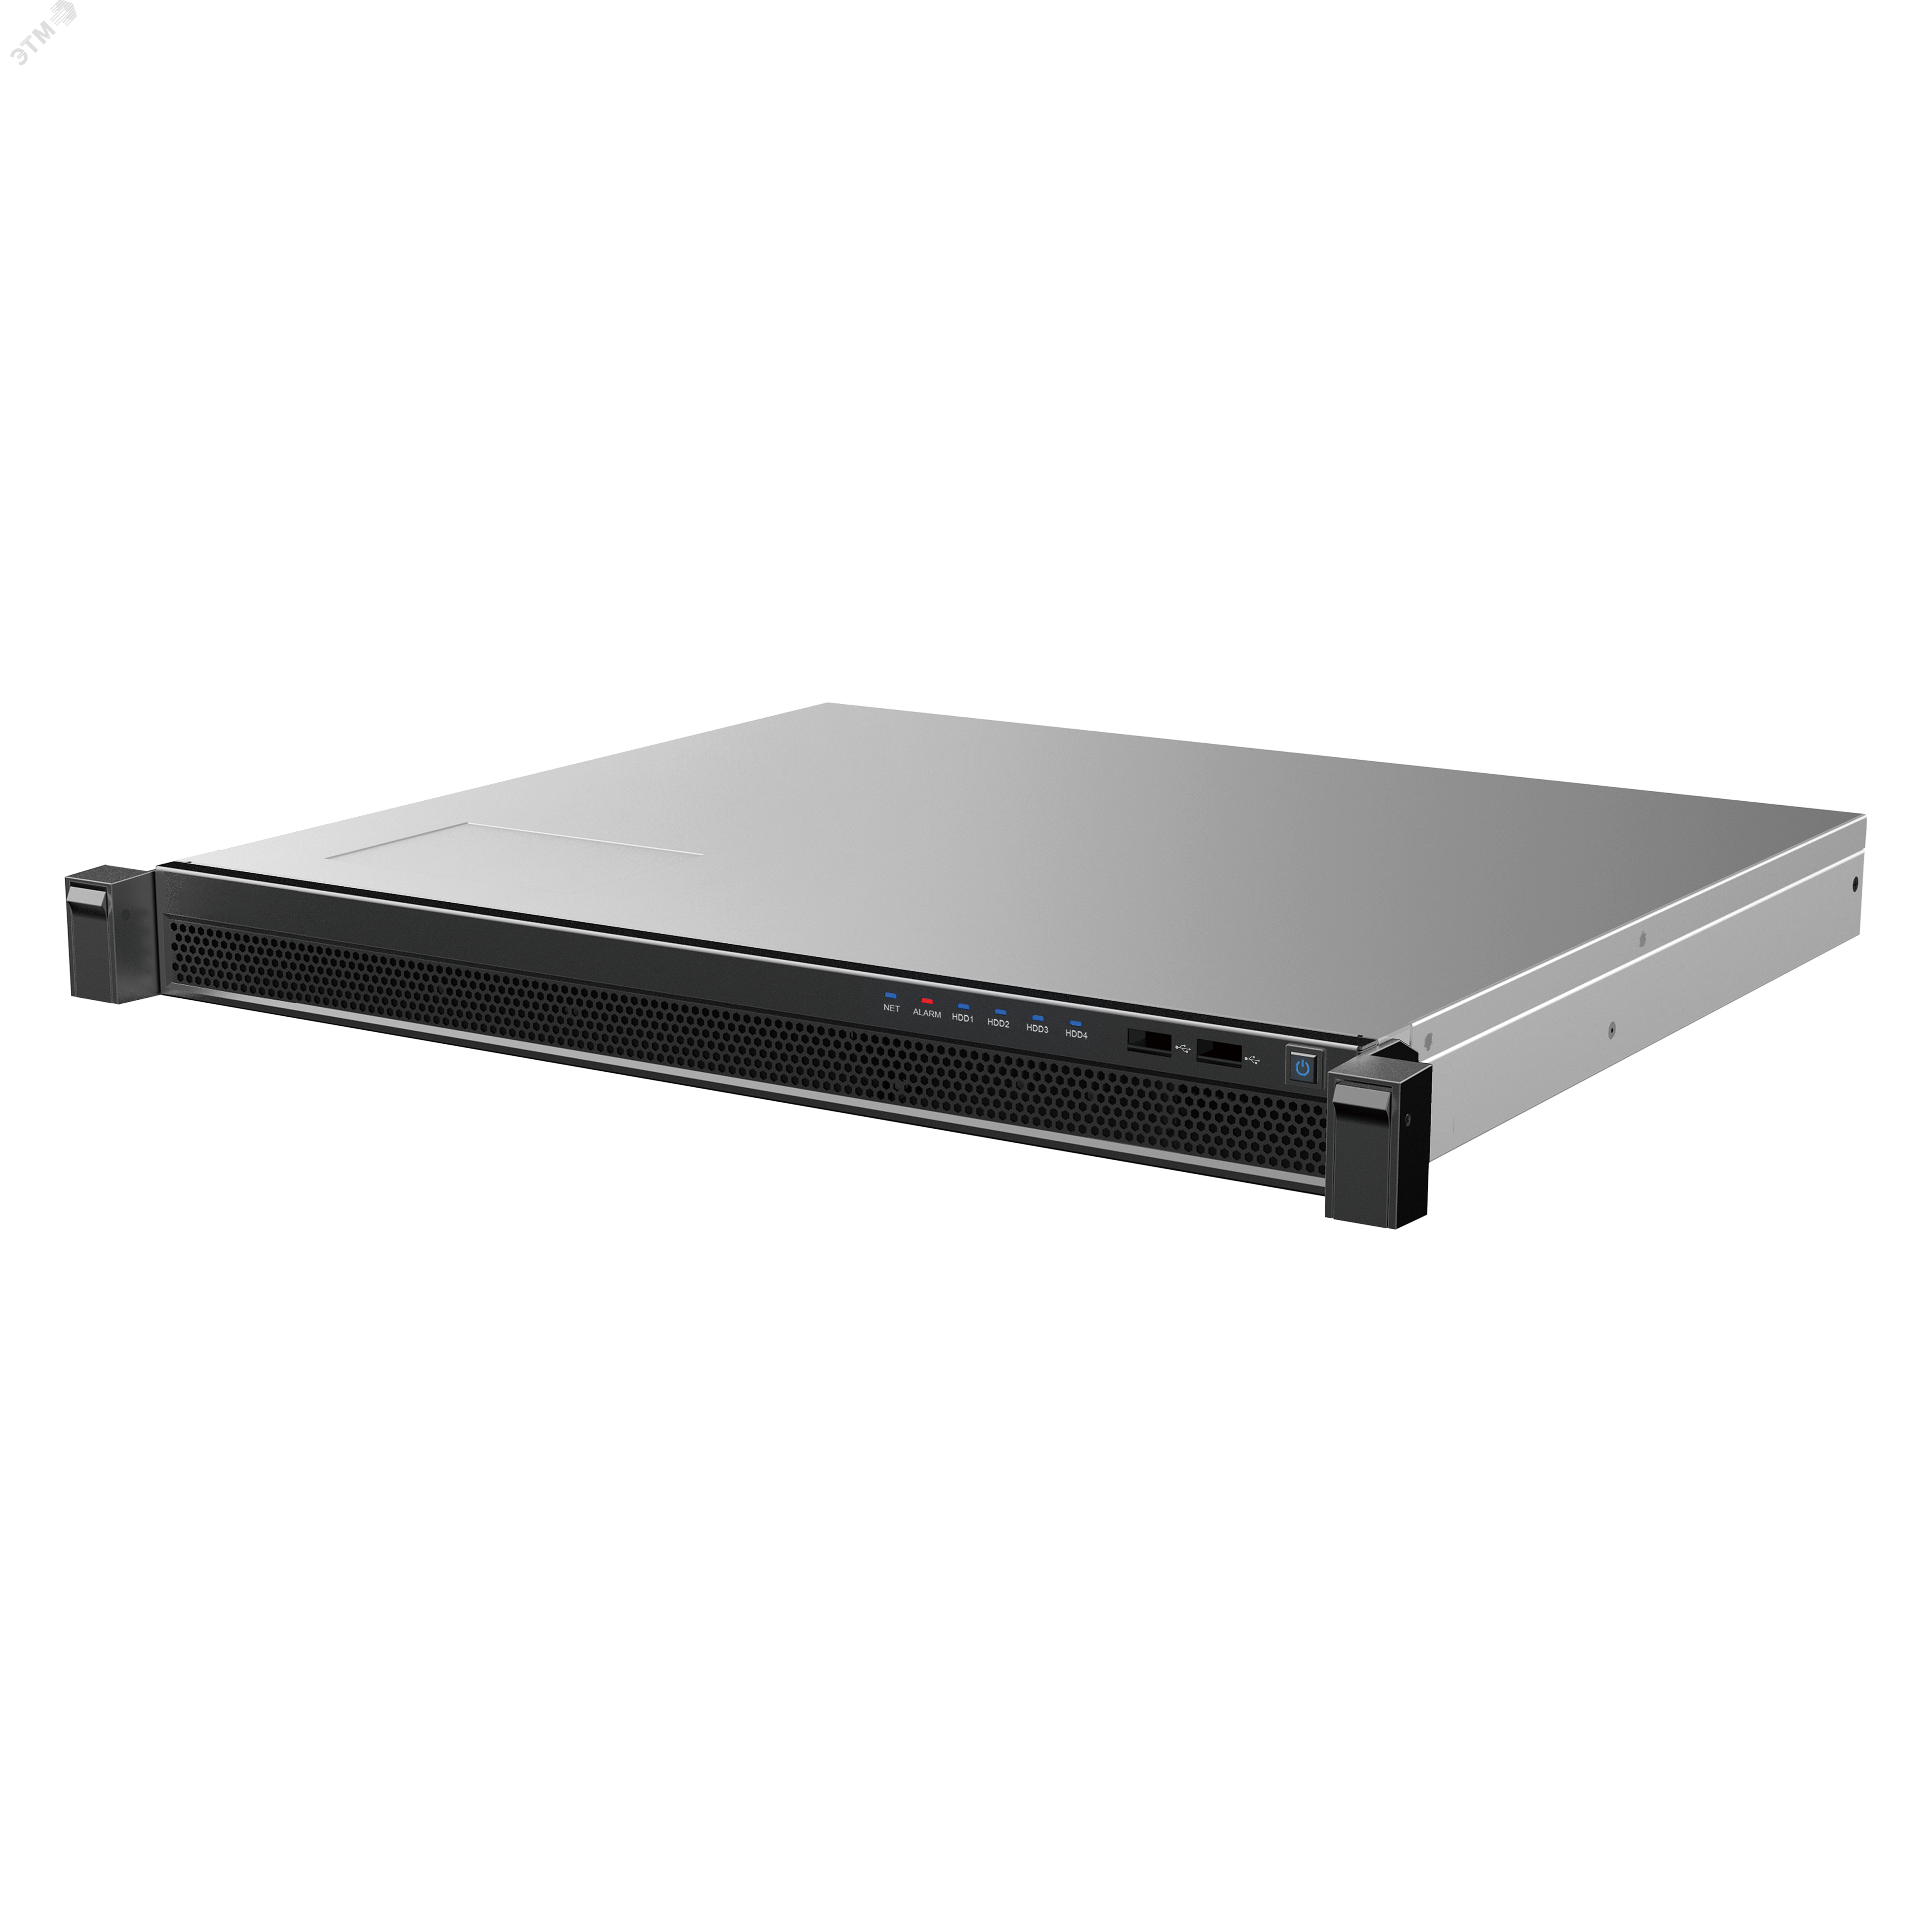 Видеосервер IP 1U 64 bit 4 core CPU (CORE-I3-6100) DHI-DSS4004-S2 Dahua